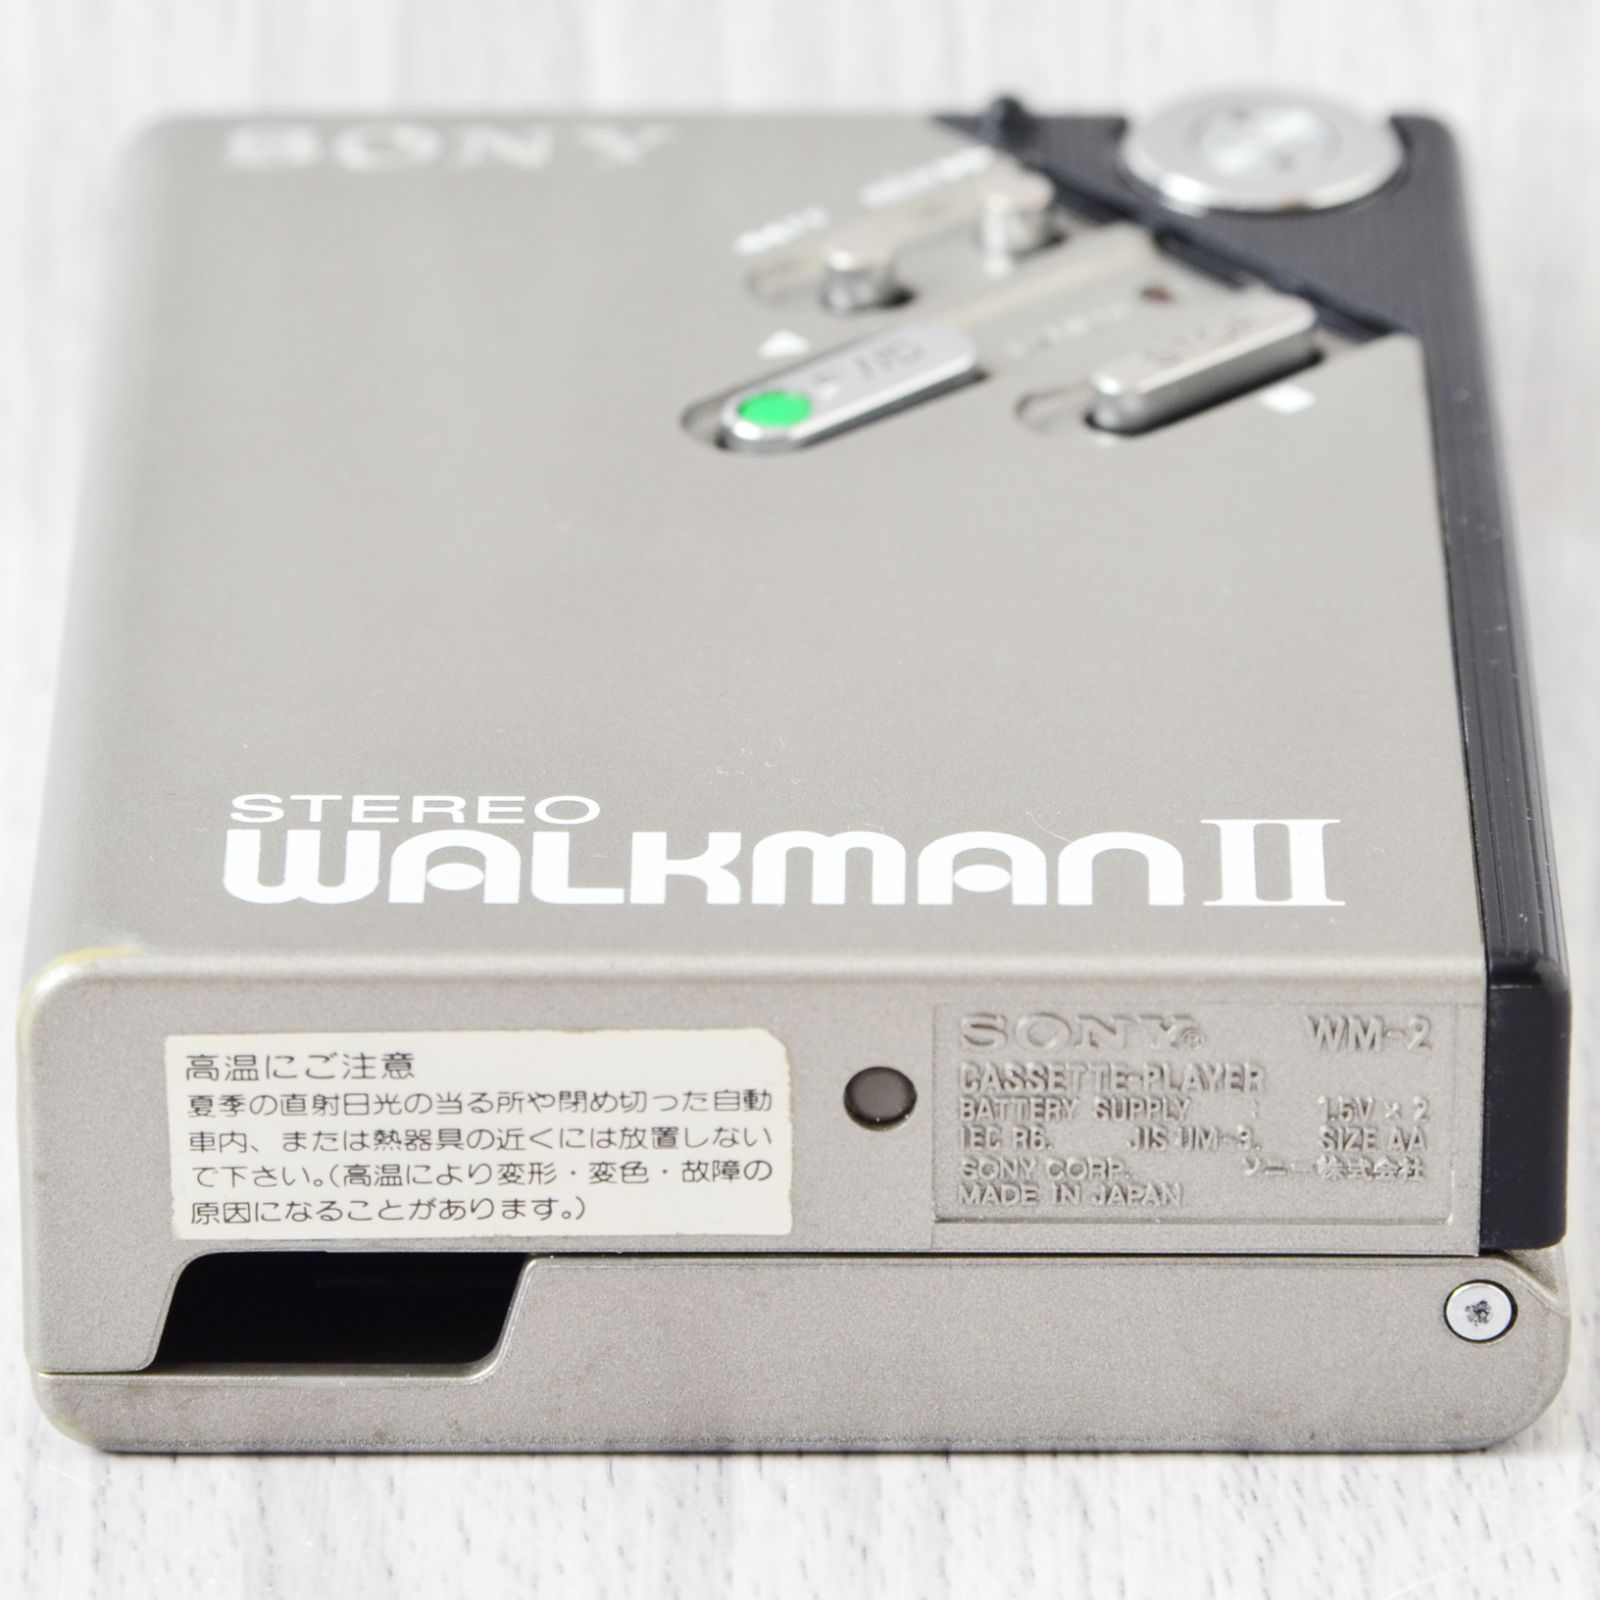 美品! SONY WALKMAN WM-2 カセットウォークマン 銀 修理・整備